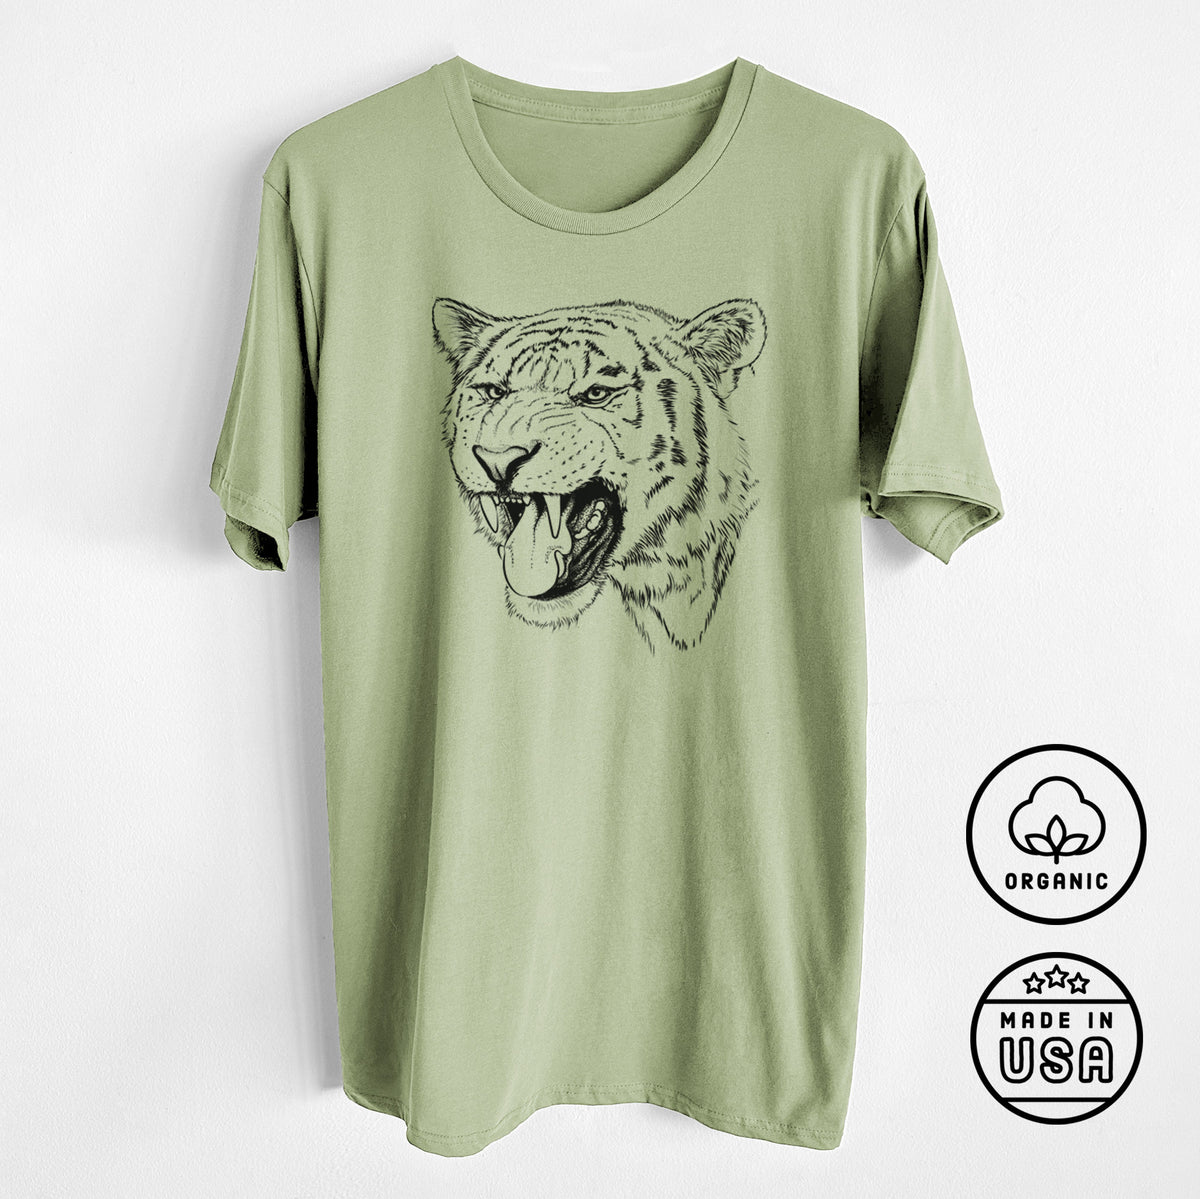 Siberian Tiger - Panthera tigris altaica - Unisex Crewneck - Made in USA - 100% Organic Cotton